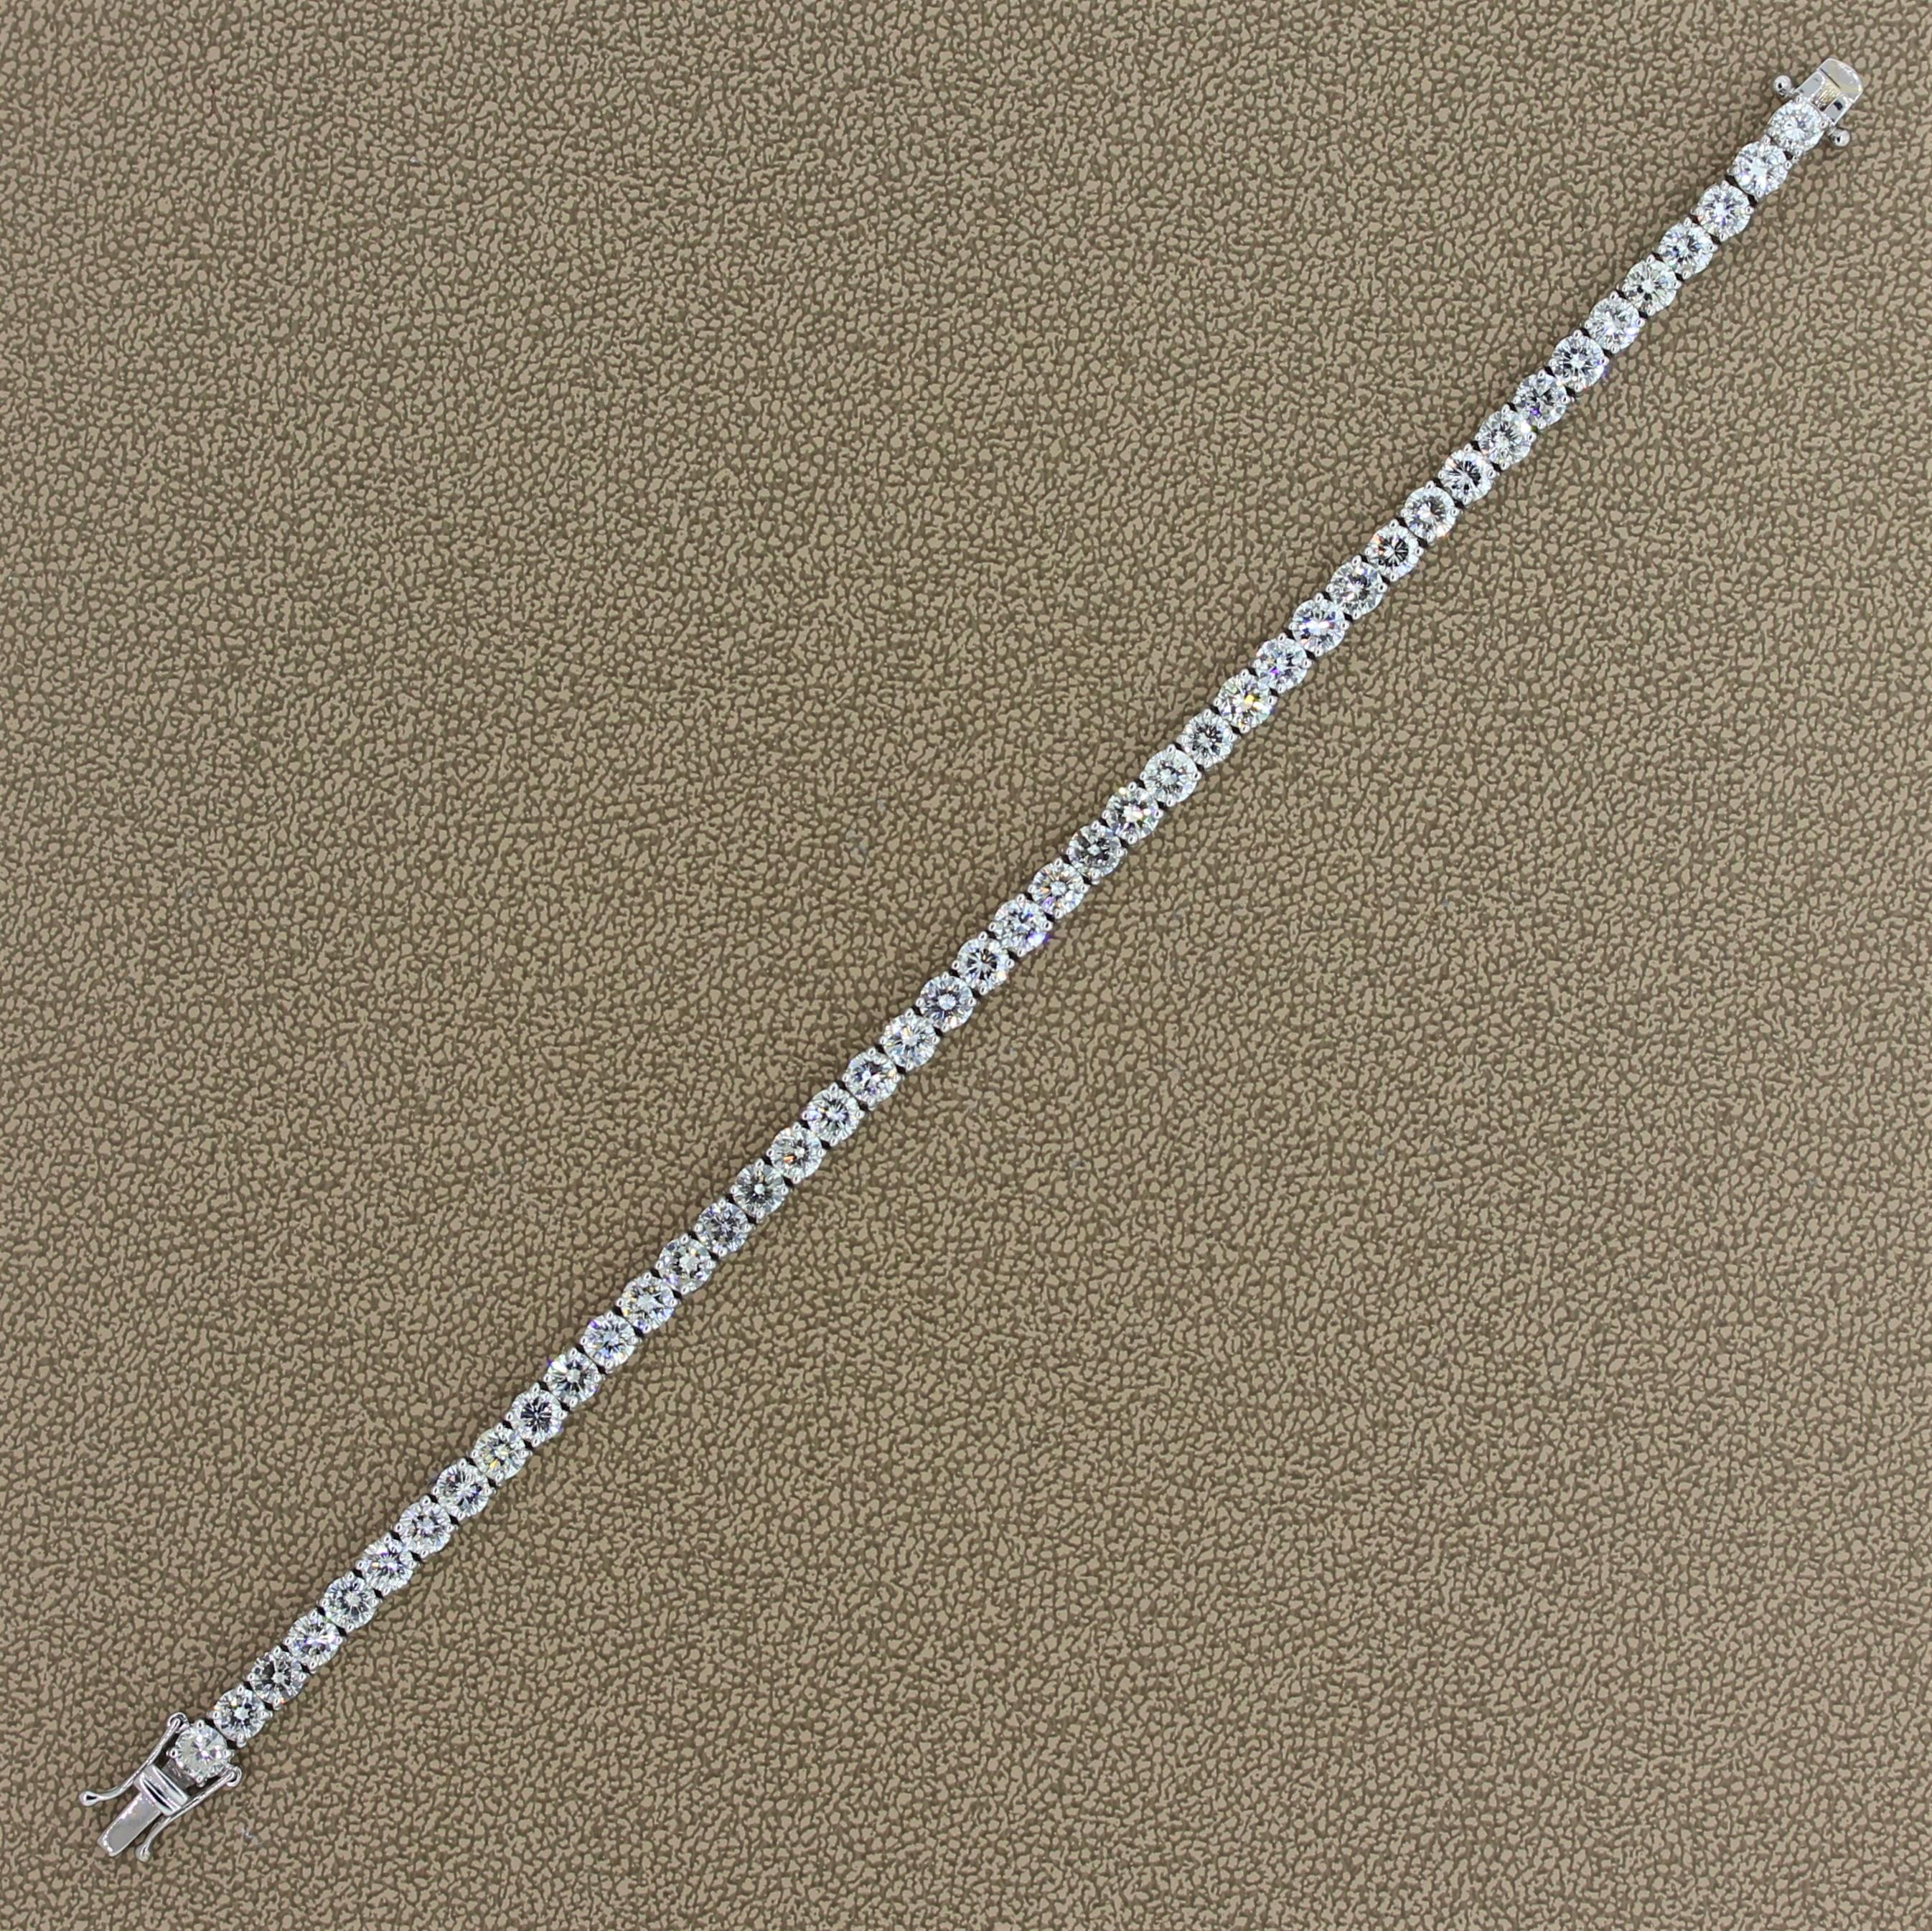 Ce bracelet tennis classique présente 11,38 carats de diamants de qualité SI. Les diamants incolores de taille ronde sont sertis dans une monture en or blanc 18 carats. Un fermoir en forme de boîte avec deux loquets de sécurité assure une fermeture